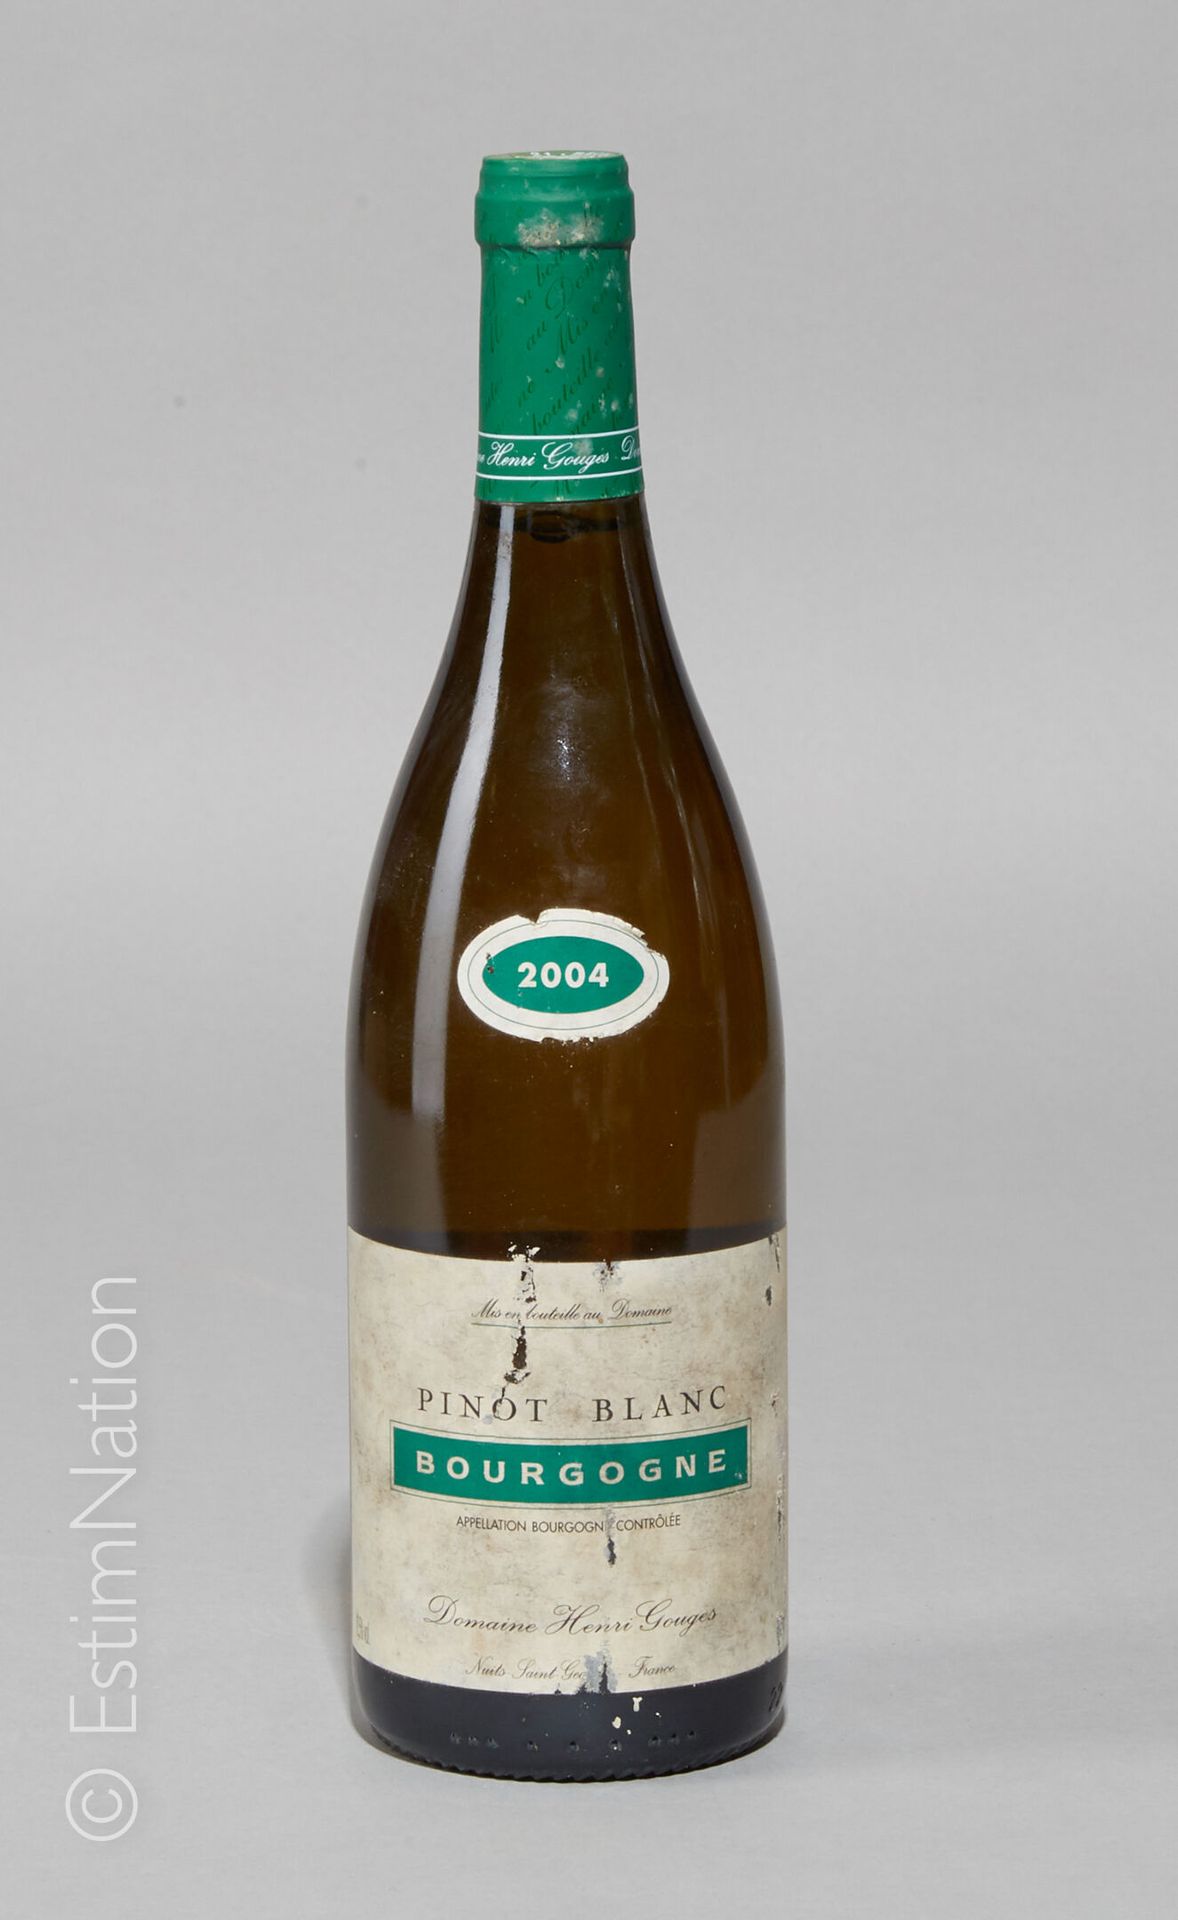 BOURGOGNE 1 bouteille Bourgogne 2004 (Pinot Blanc) Domaine Henri Gouges